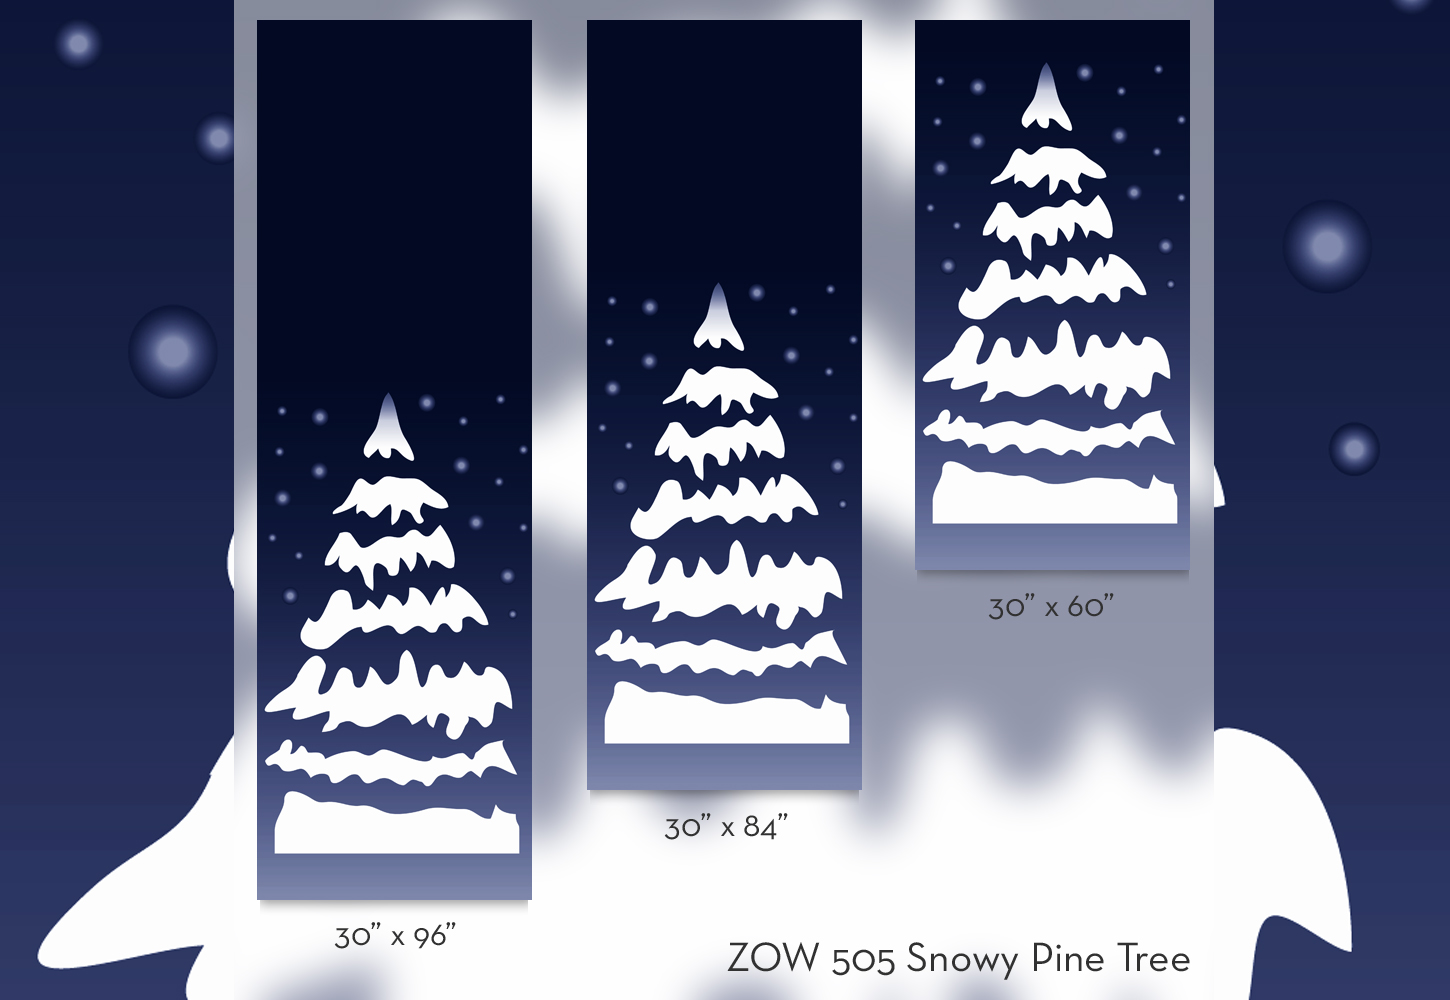 ZOW 505 Snowy Pine Tree